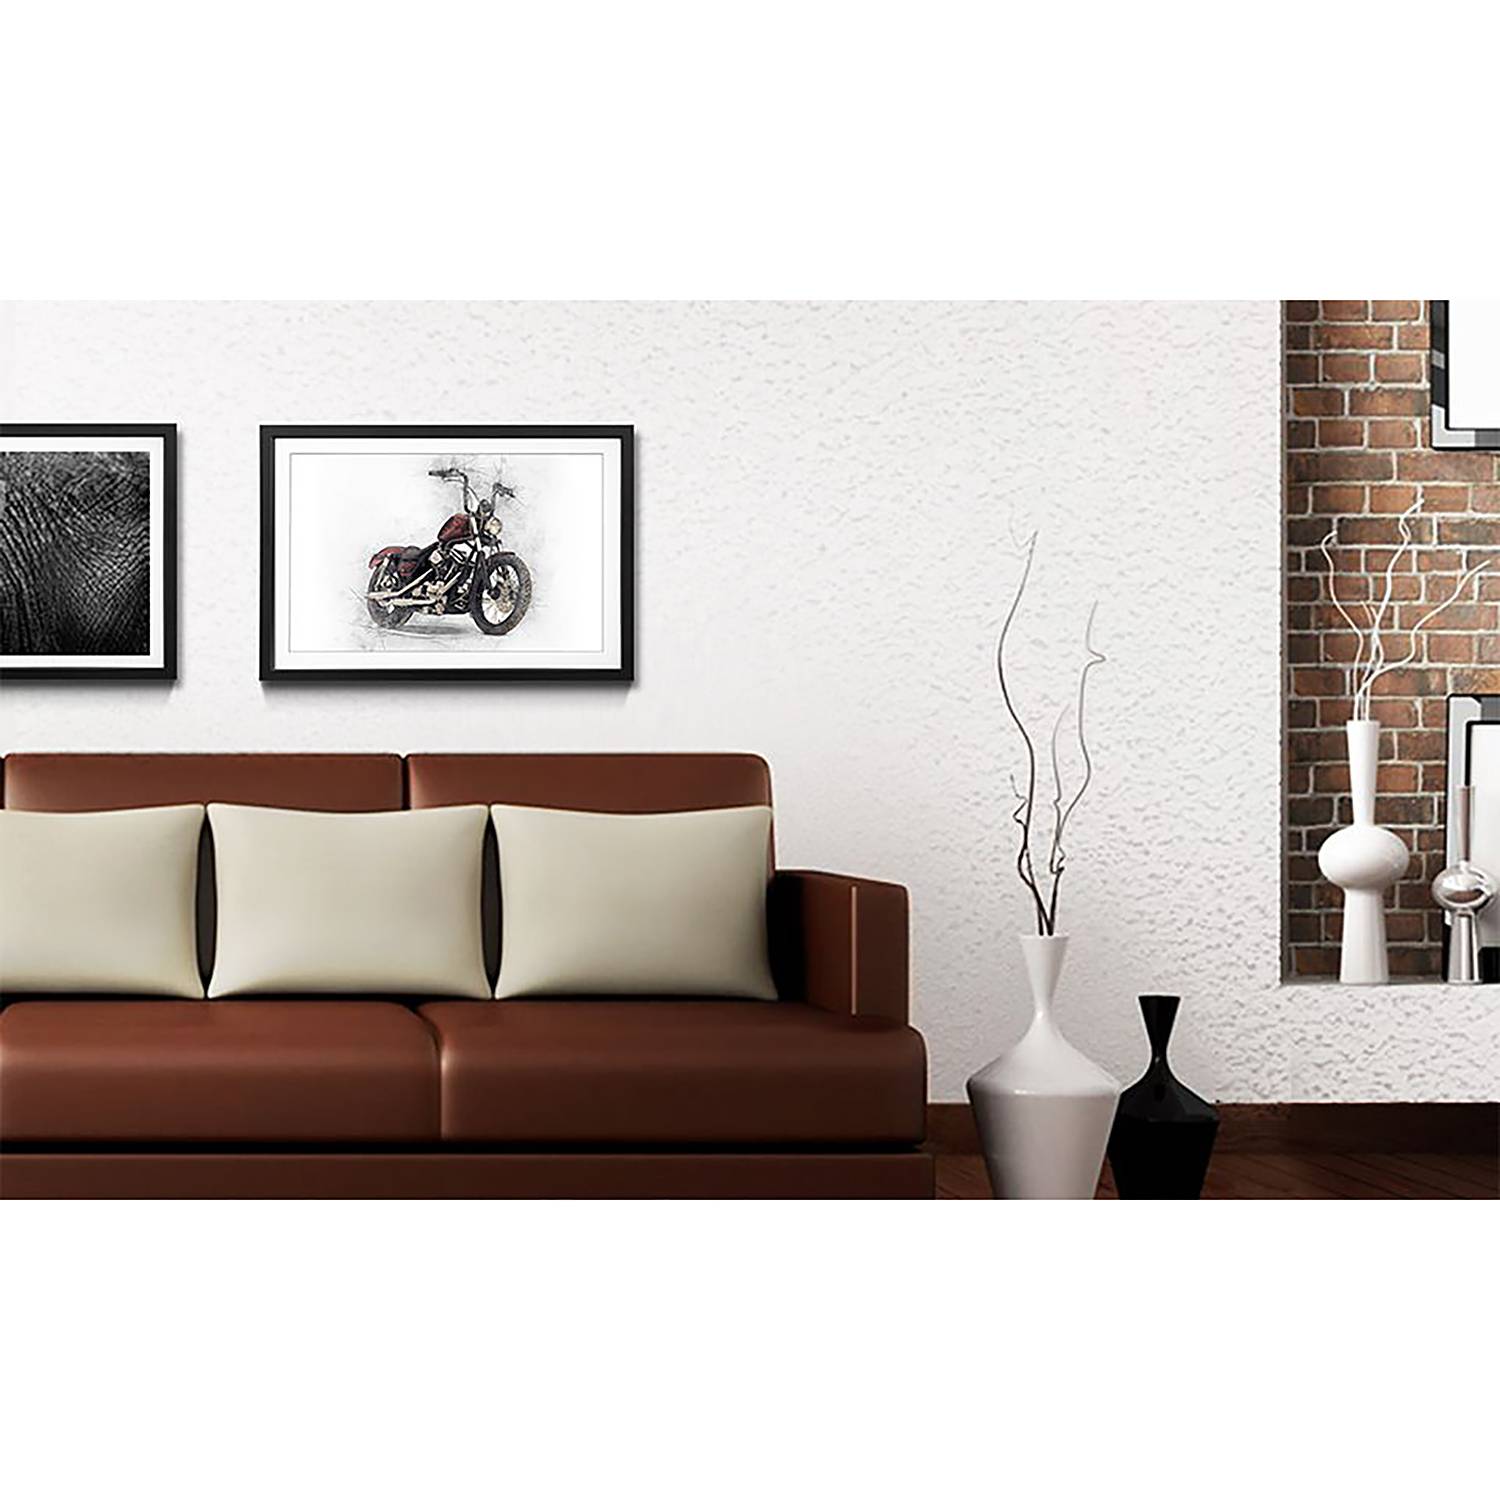 Gerahmtes Bild Motorbike von WandbilderXXL